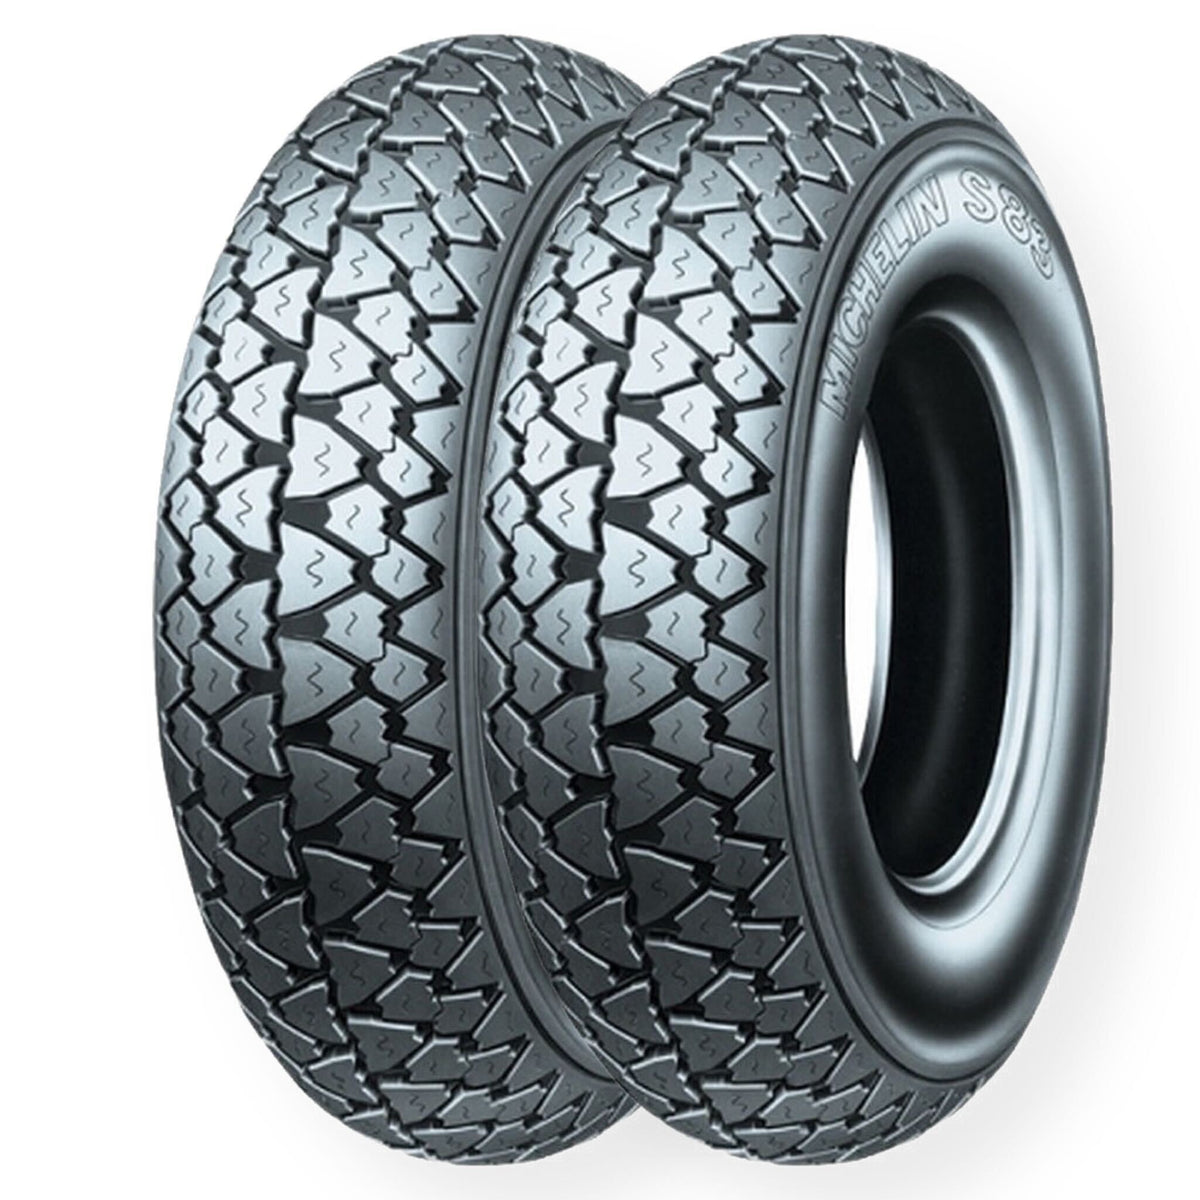 Vespa Lambretta Michelin S83 350 X 10 Tyre - 2 Tyre Bundle